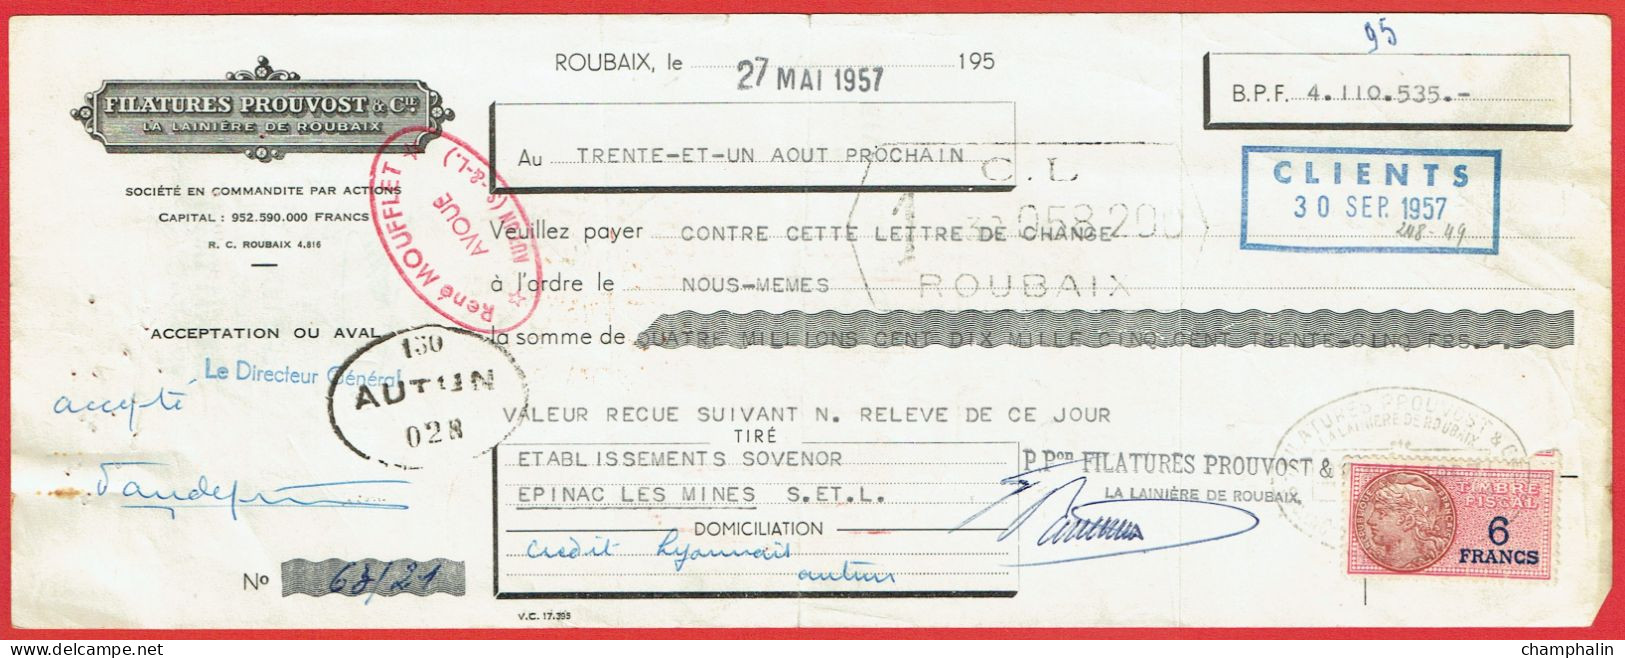 Lot 8 Lettres De Change De Roubaix (59) Pour Epinac-les-Mines (71) - 1957 - Timbre TF N°439-440 - Filatures Prouvost - Cambiali